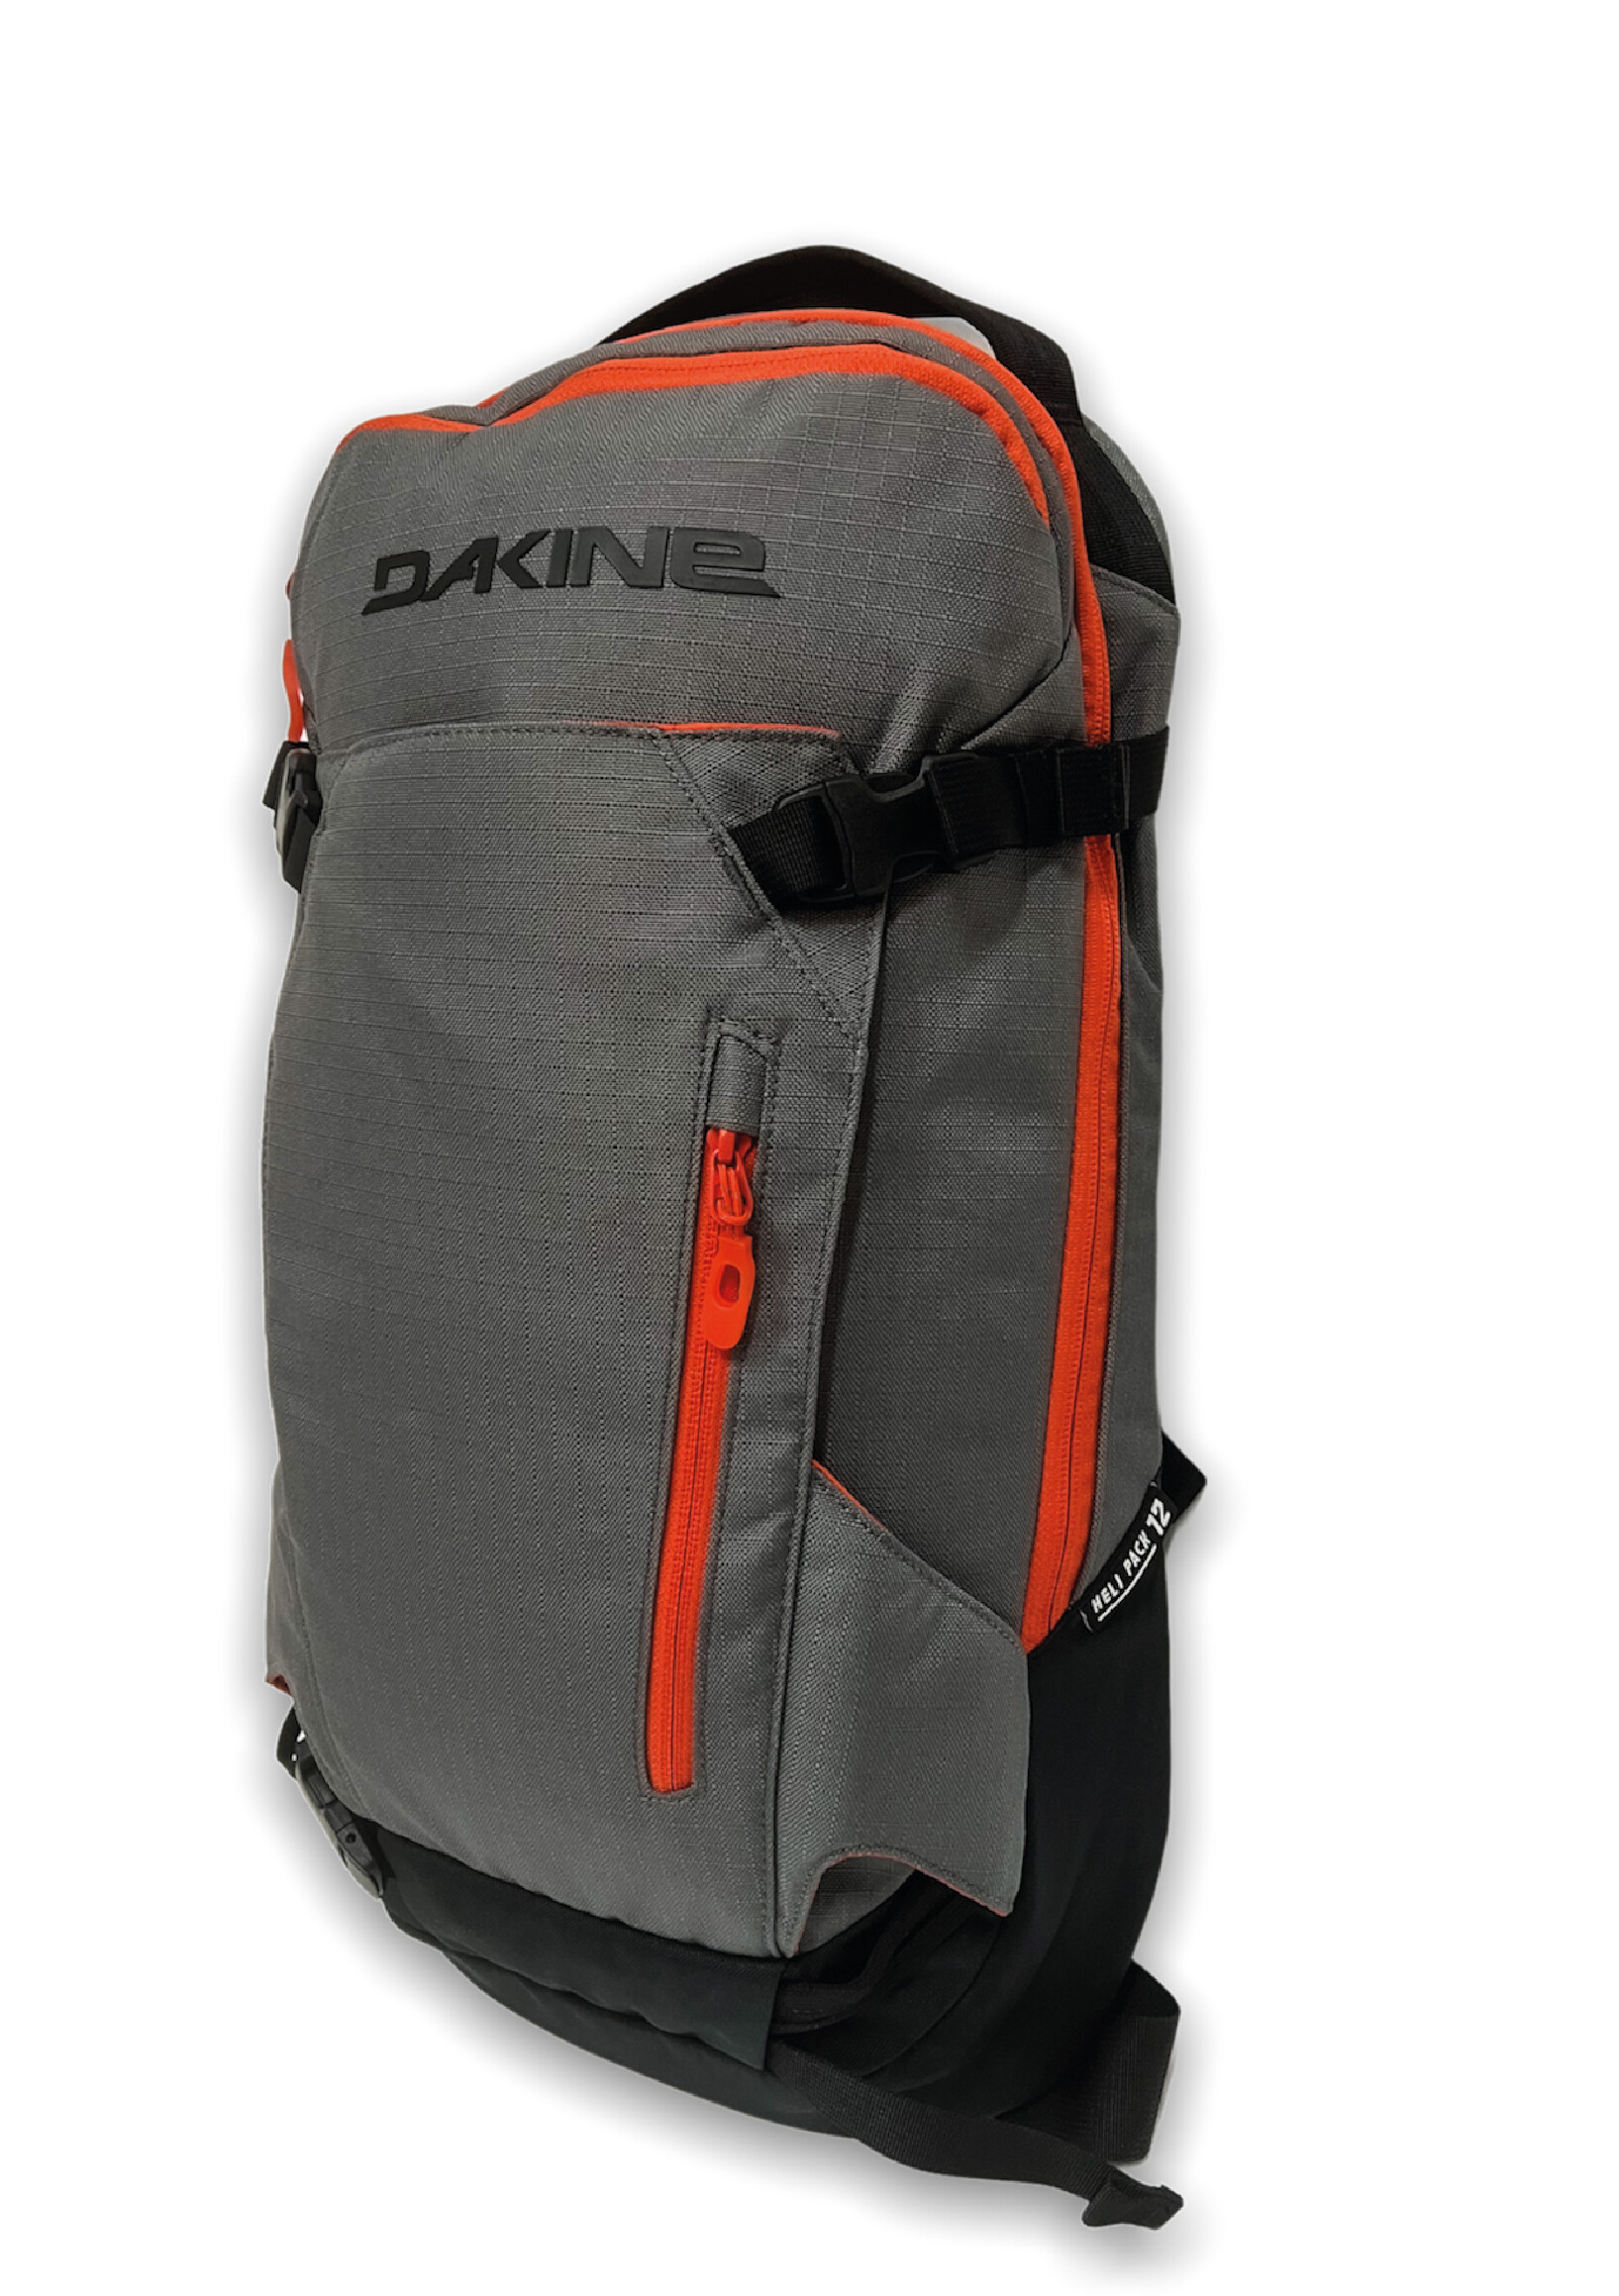 Heli Pack 12L Backpack